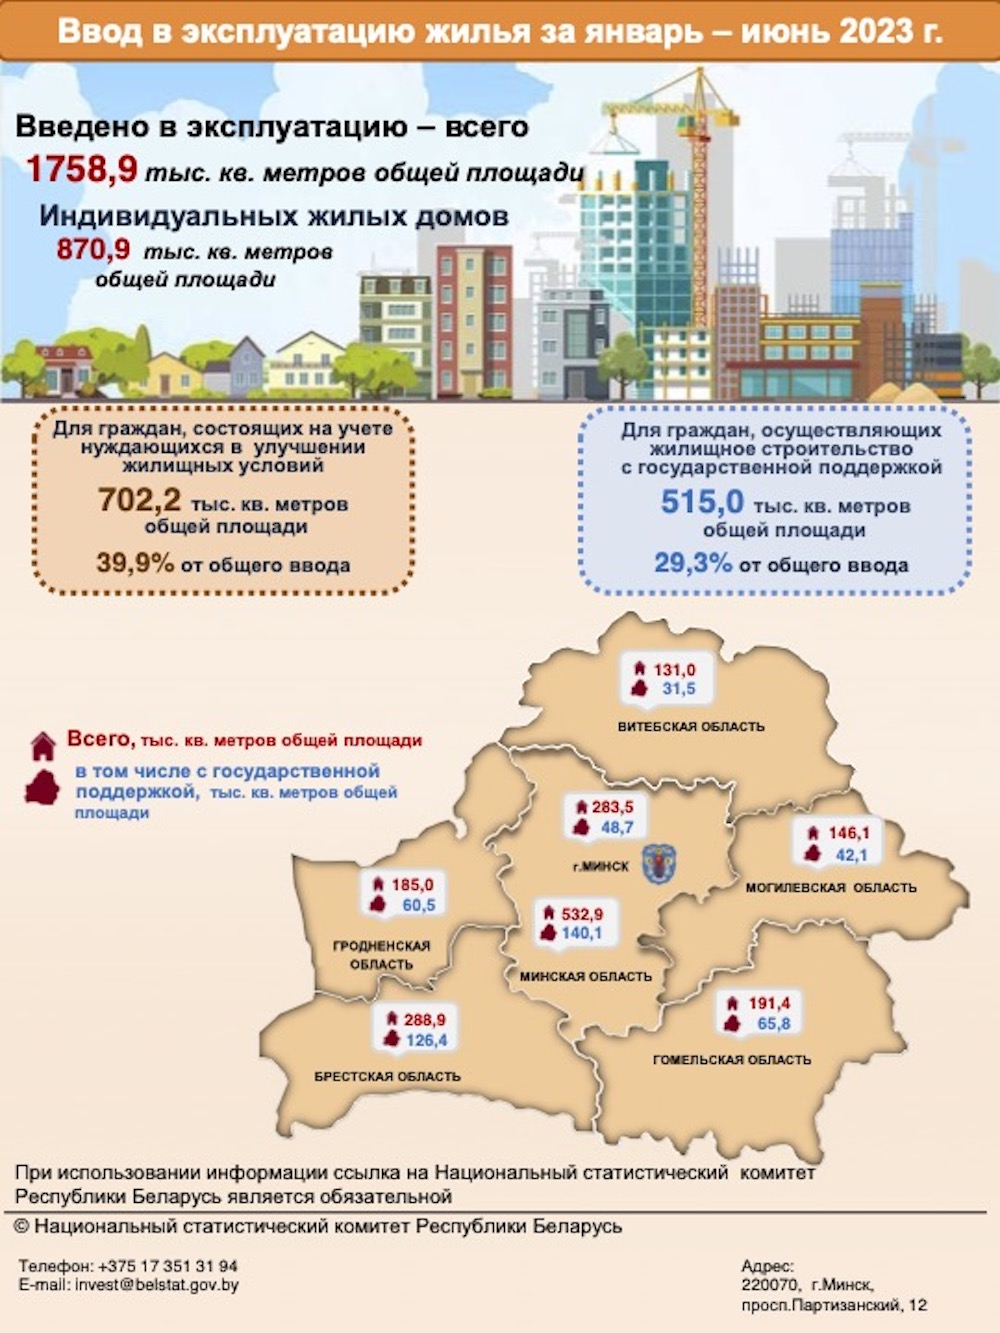 Инфографика по вводу в эксплуатацию жилья за январь-июнь 2023 года в Беларуси. Фото: Белстат.